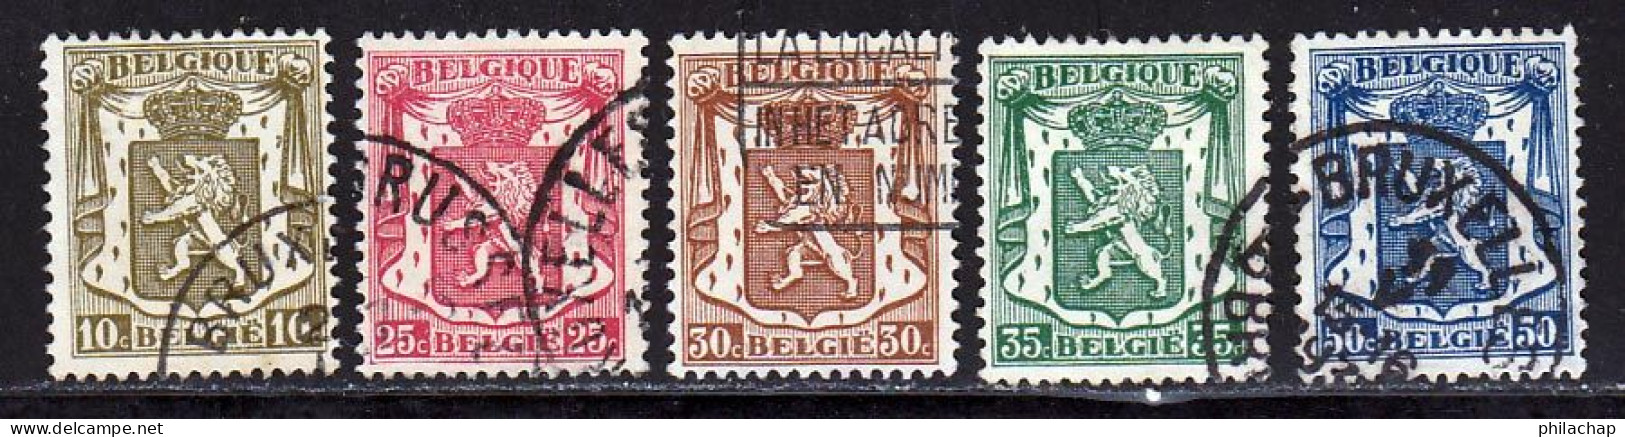 Belgique 1936 Yvert 420 - 423 / 426 (o) B Oblitere(s) - 1929-1937 Heraldic Lion